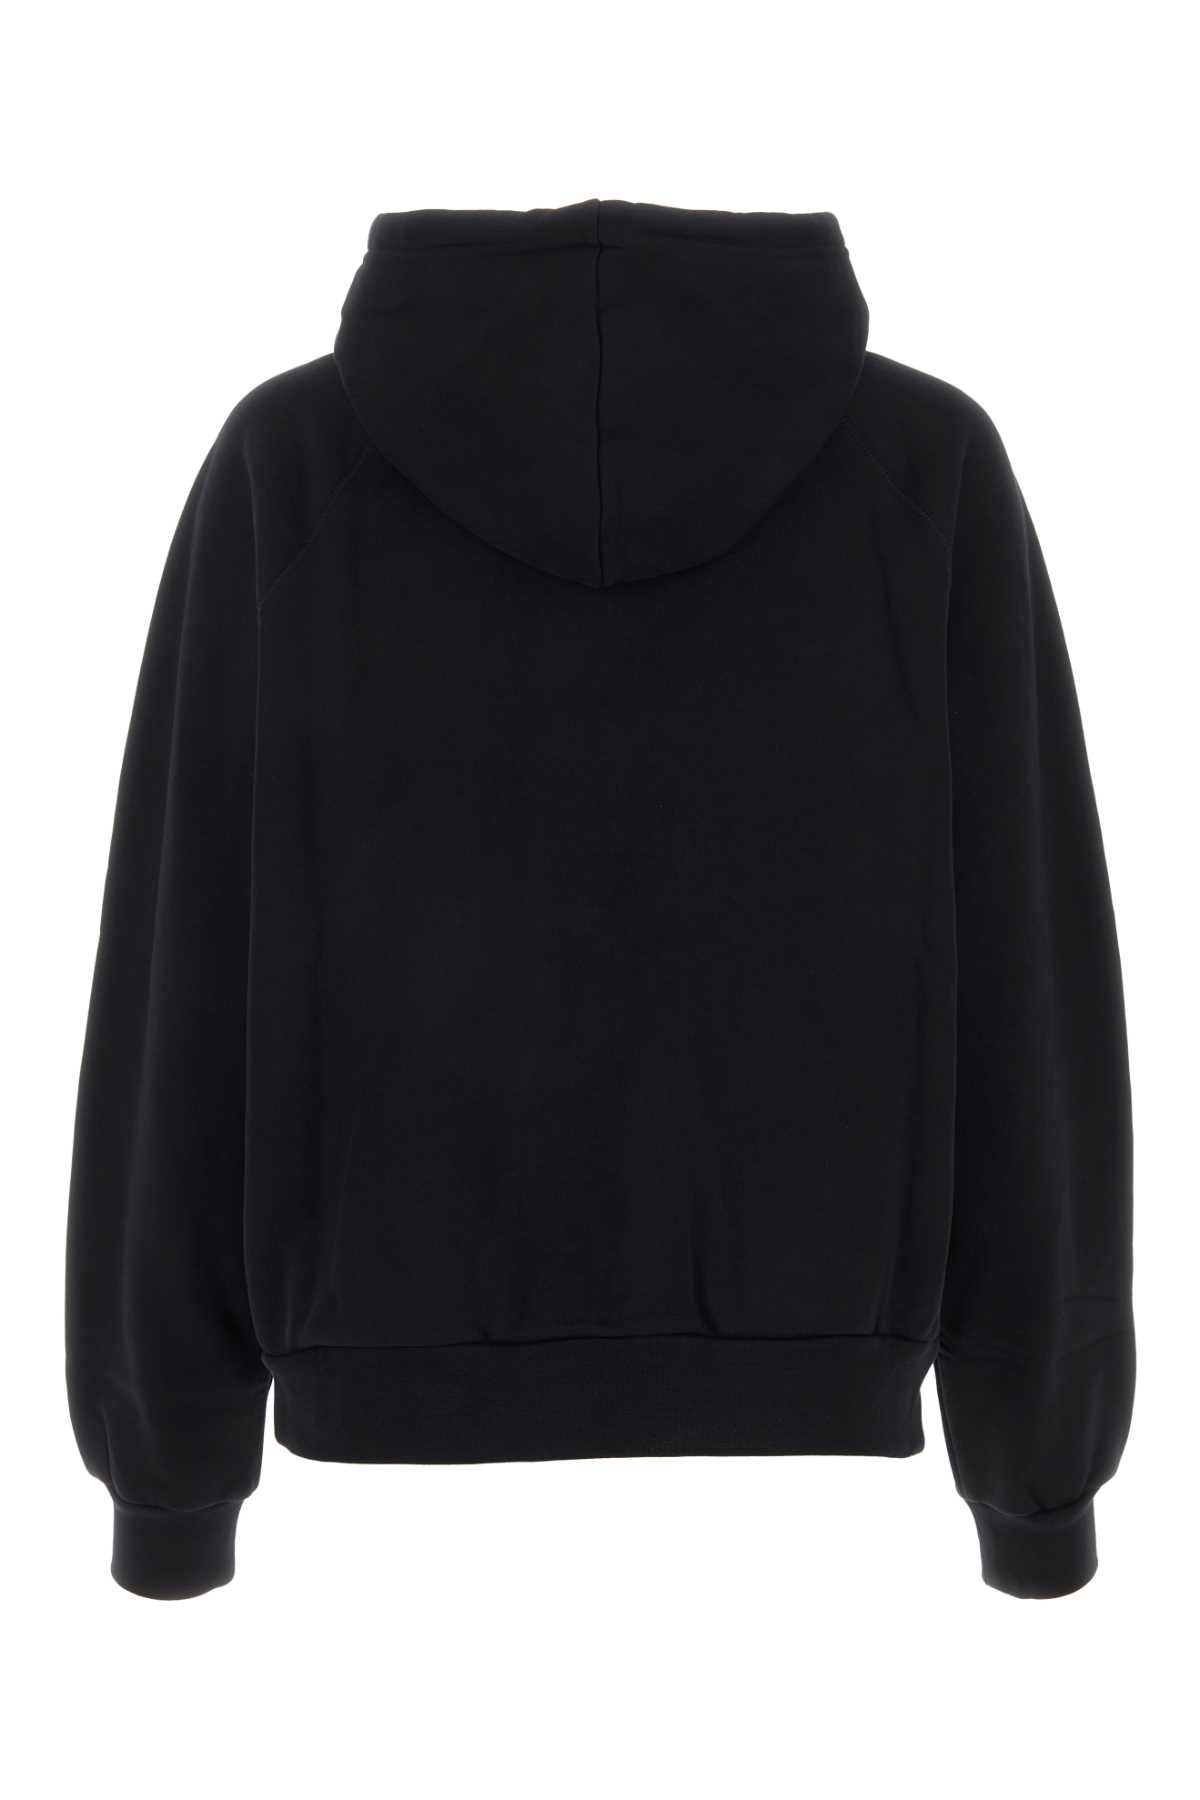 Apc Black Cotton Sweatshirt